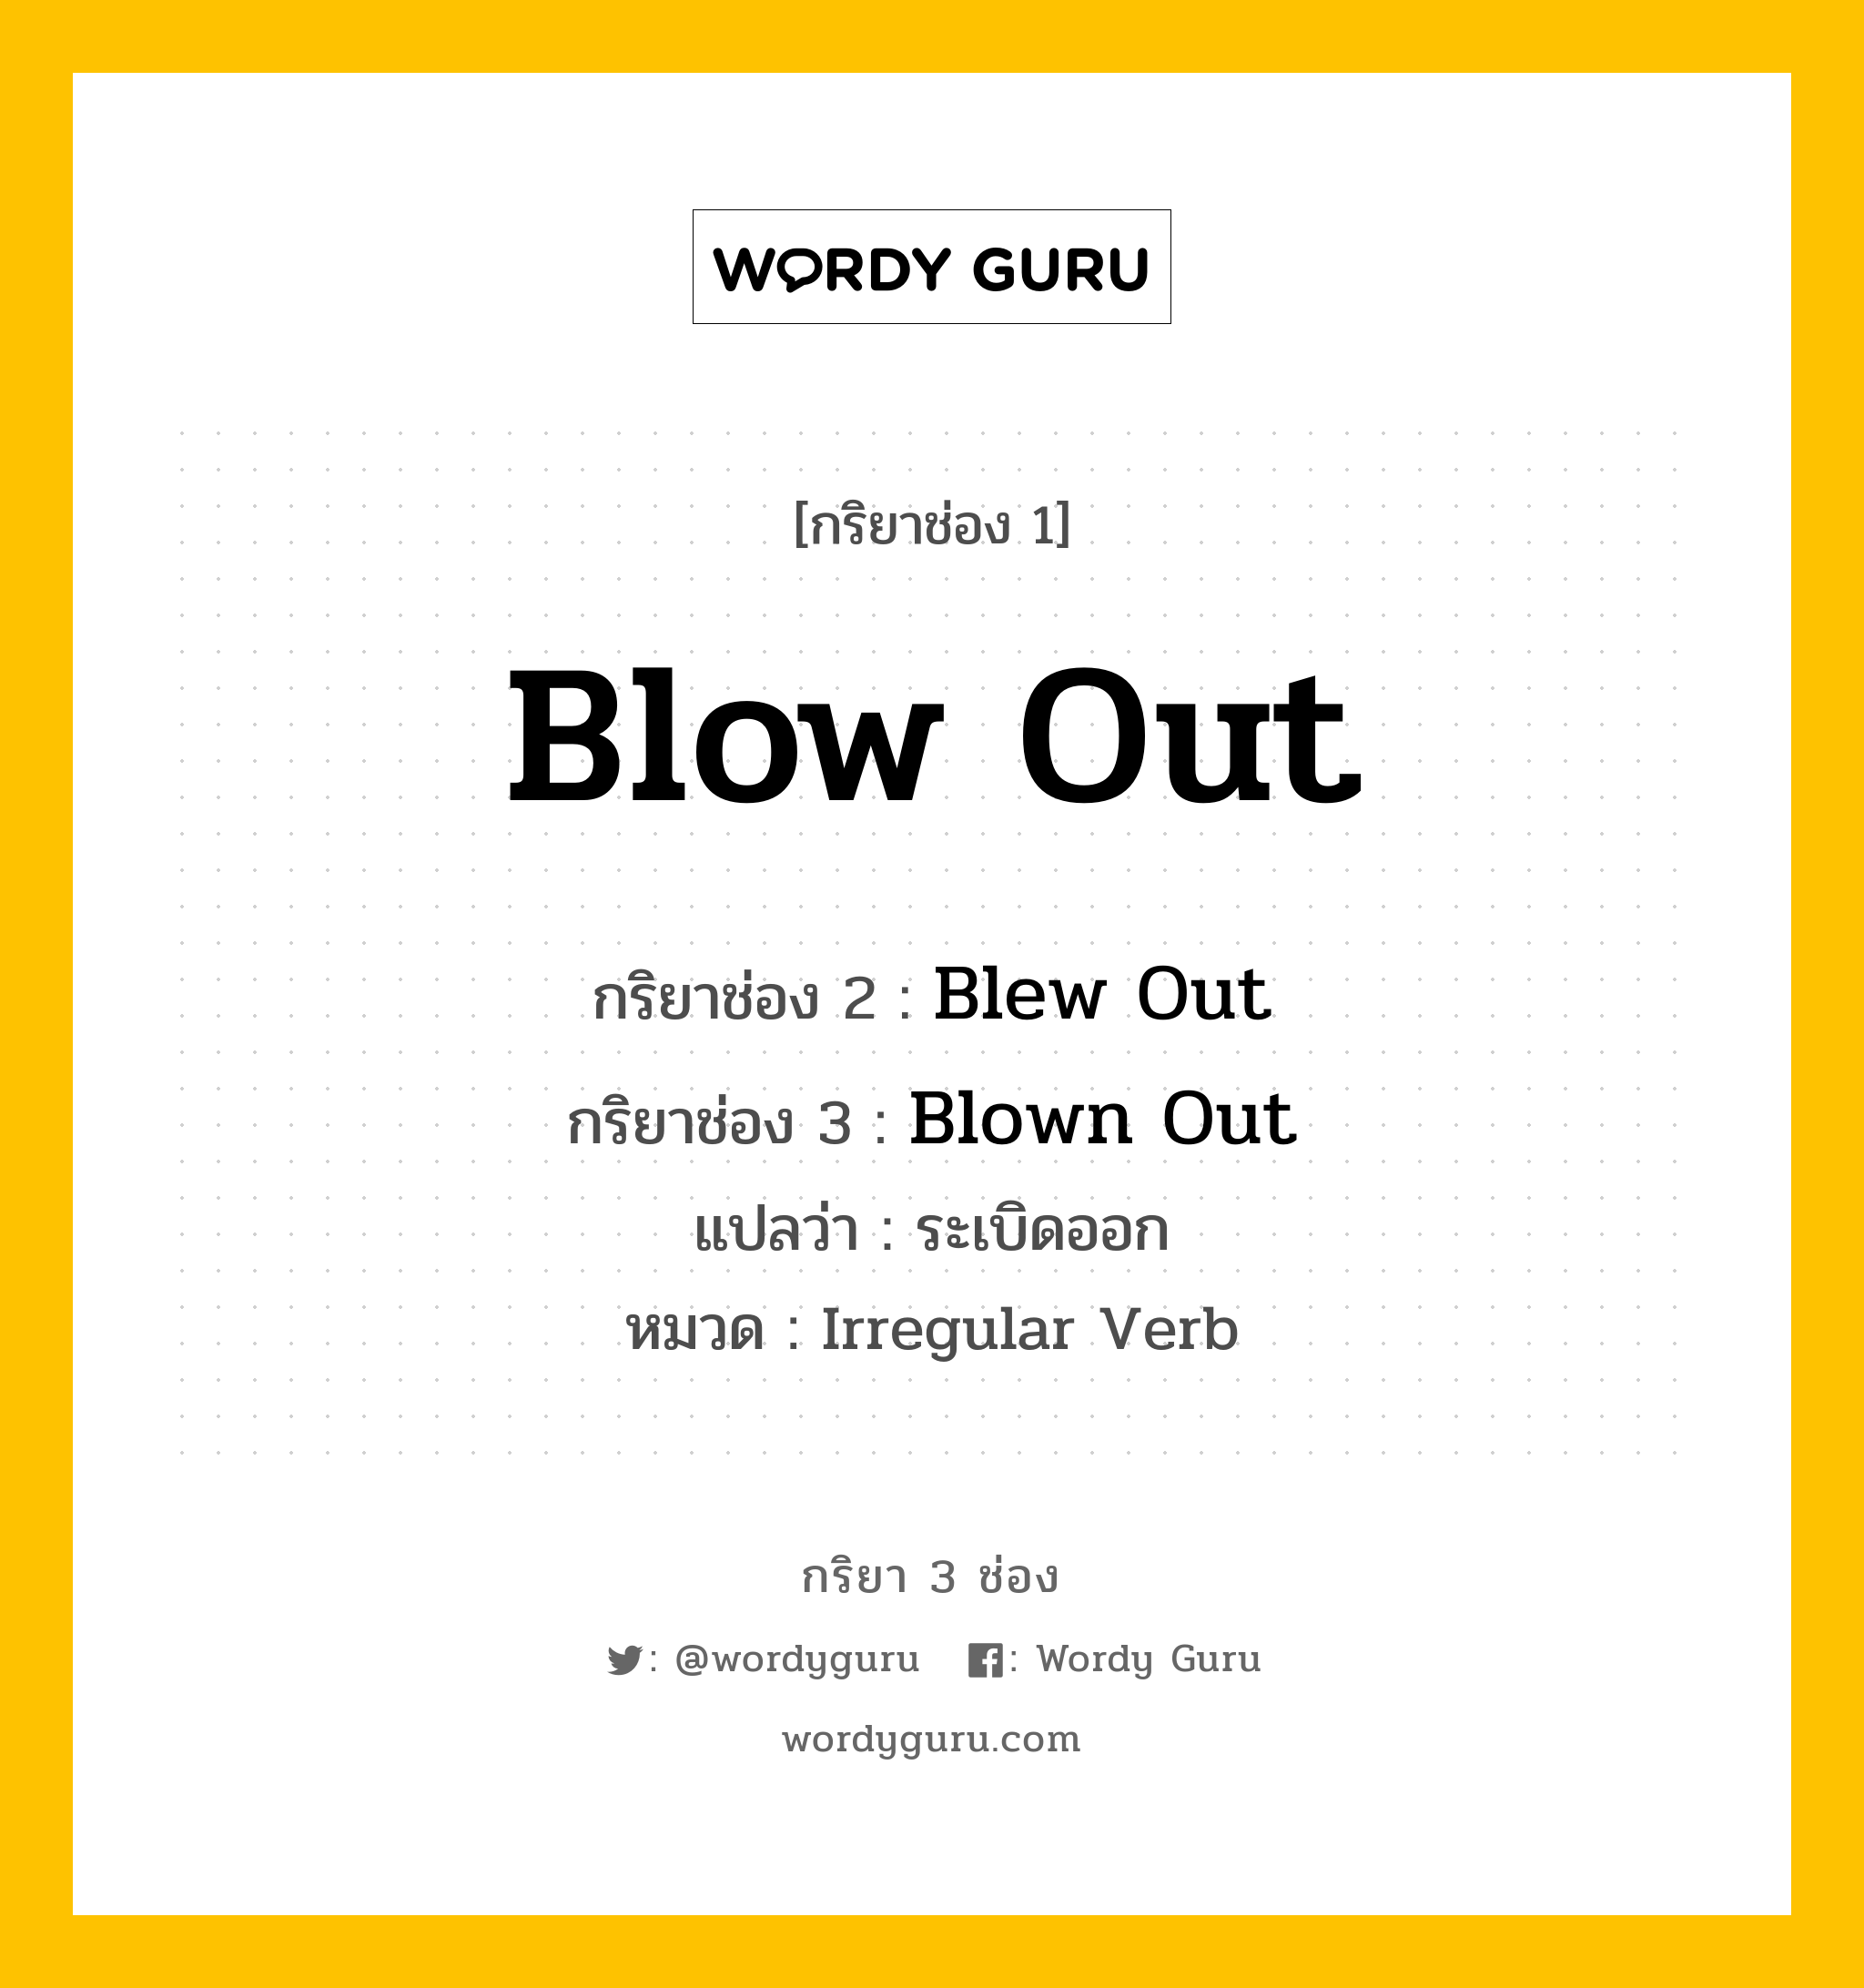 กริยา 3 ช่อง ของ Blow Out คืออะไร? มาดูคำอ่าน คำแปลกันเลย, กริยาช่อง 1 Blow Out กริยาช่อง 2 Blew Out กริยาช่อง 3 Blown Out แปลว่า ระเบิดออก หมวด Irregular Verb หมวด Irregular Verb